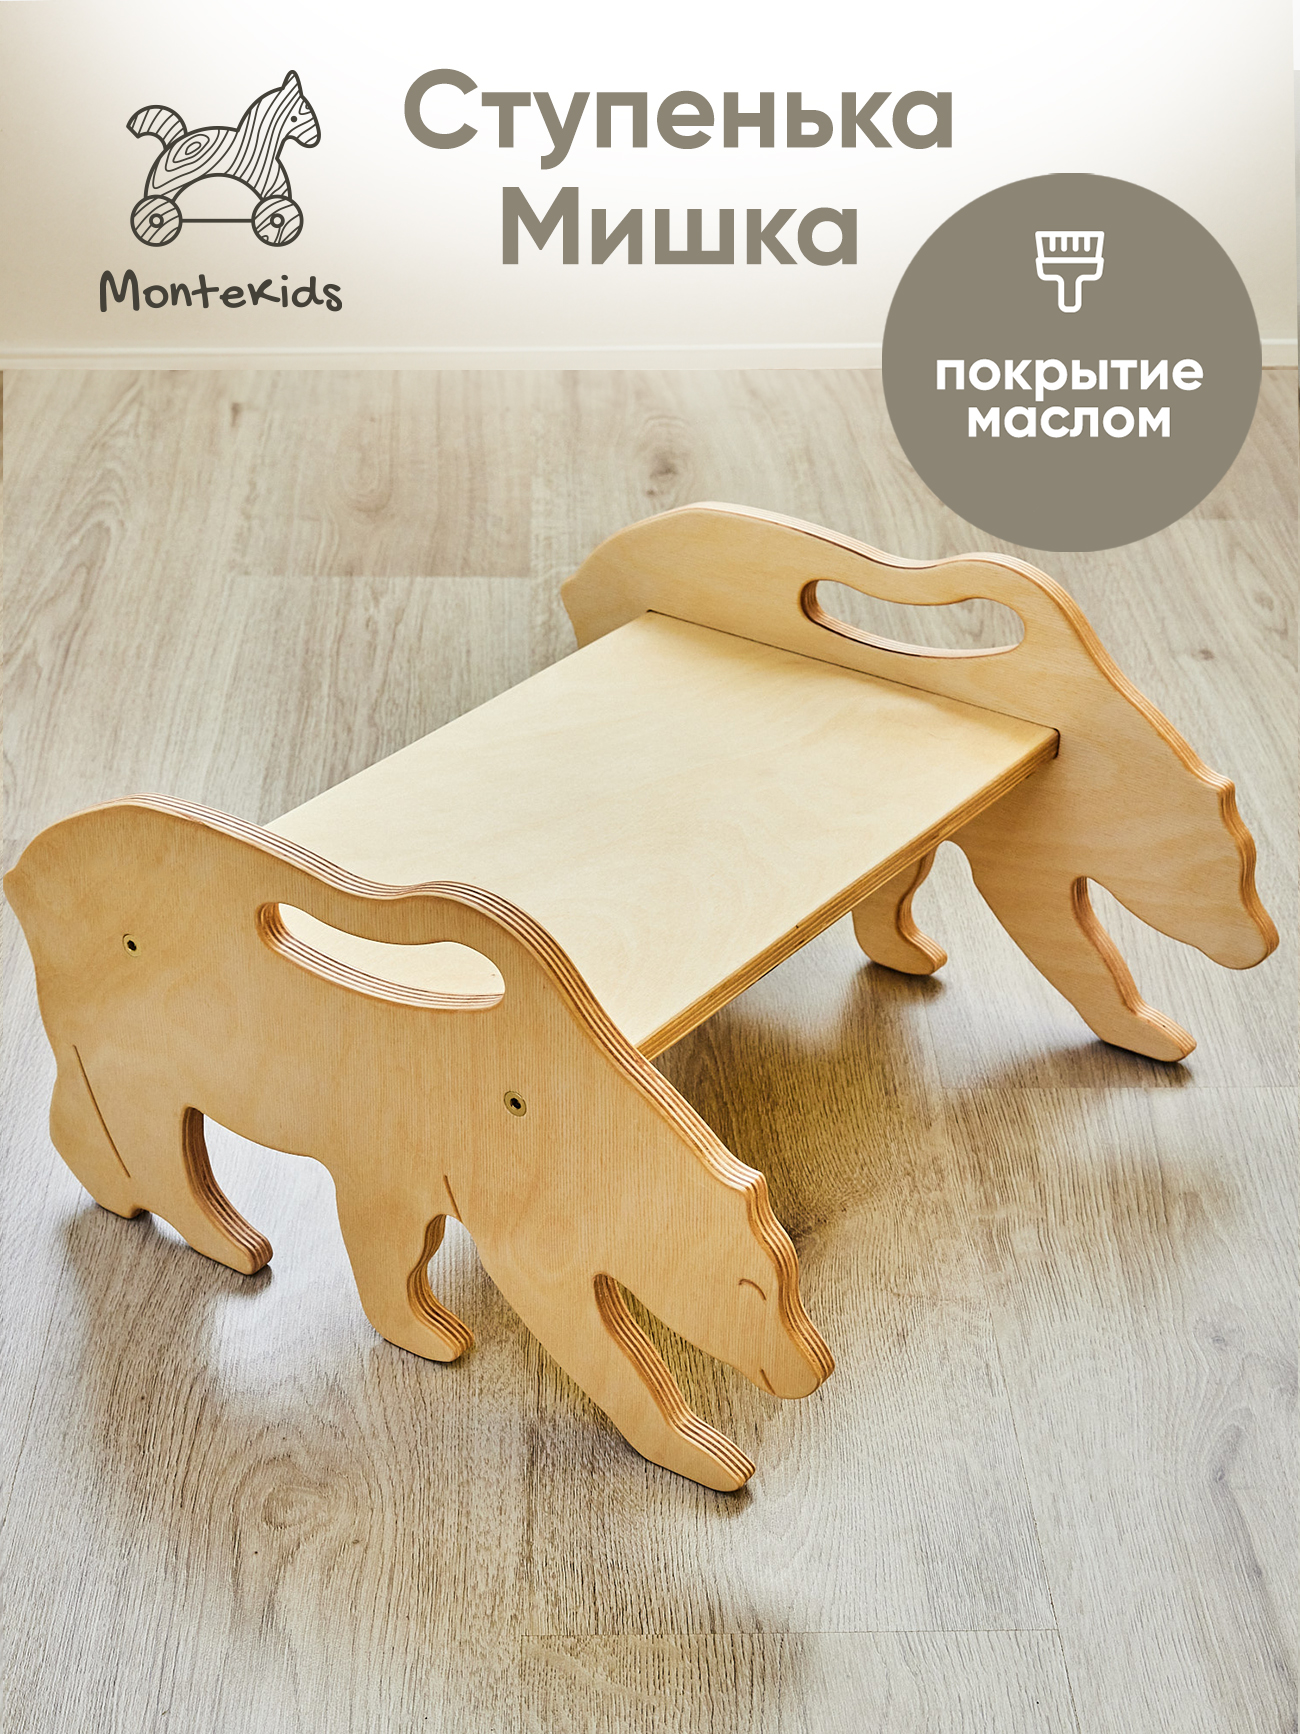 Скамейка детская Montekids Медведь, ступенька, подставка для ног (покрытие маслом)